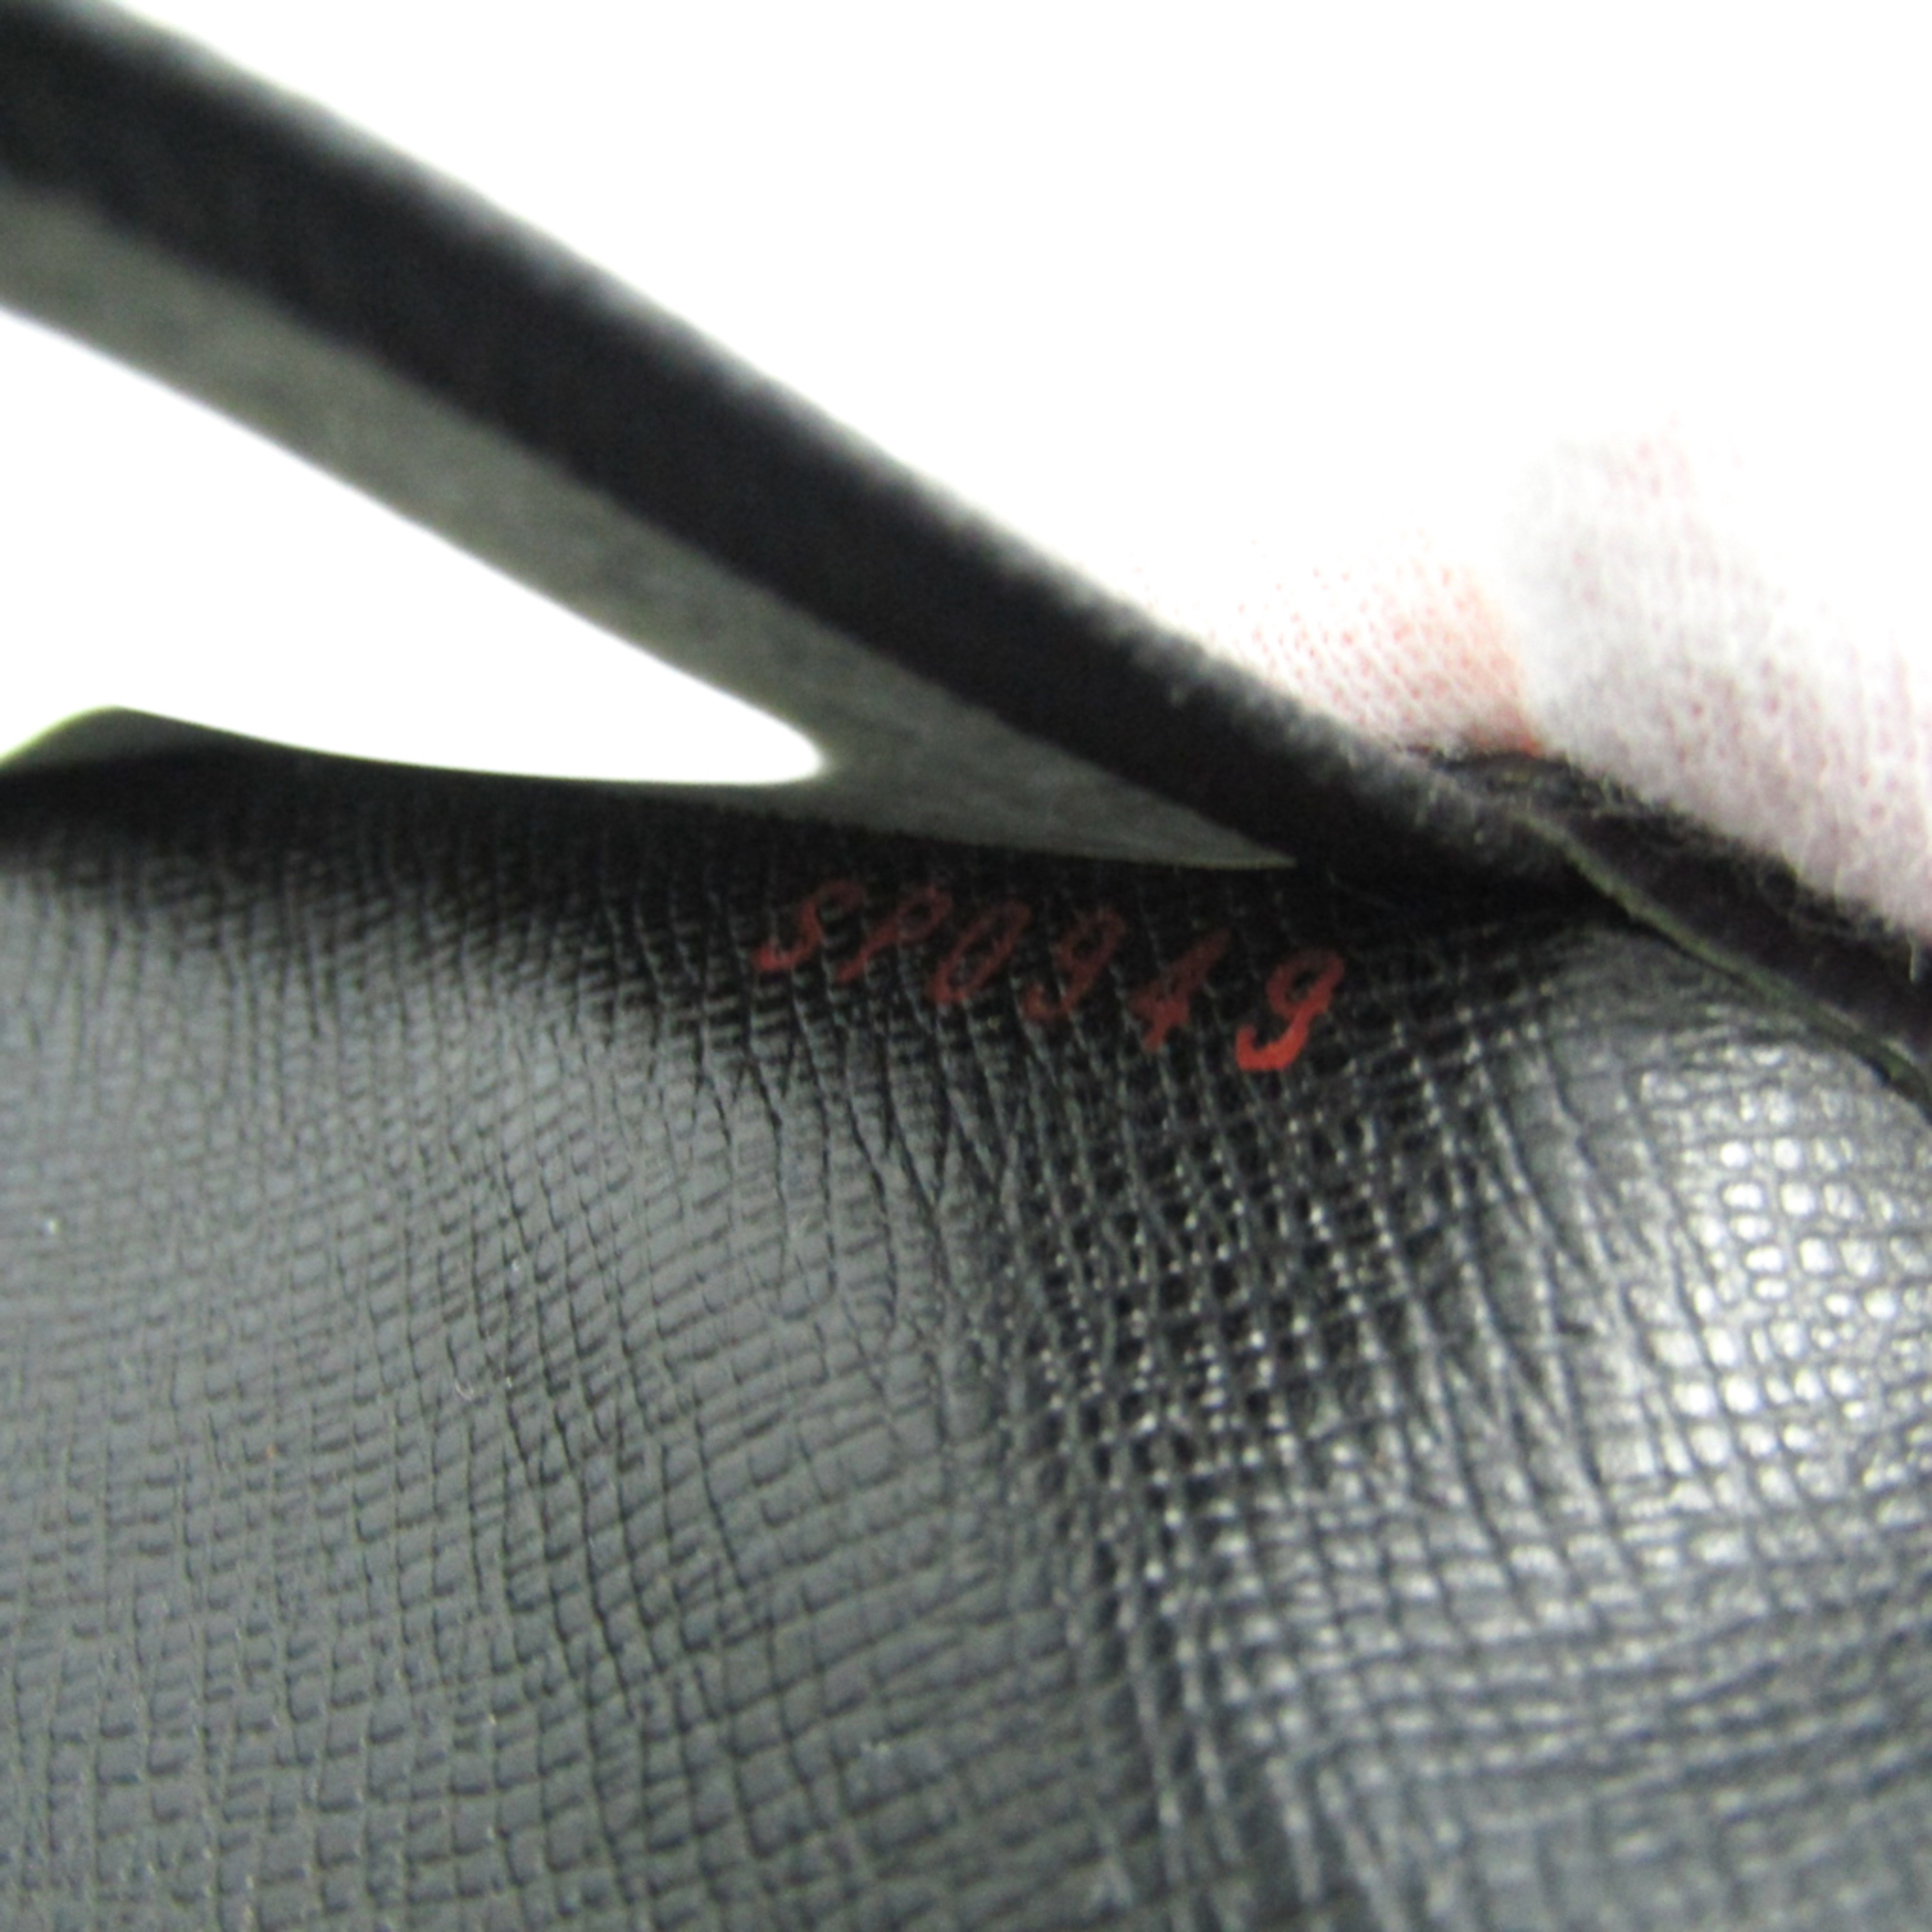 Louis Vuitton Epi Epi Leather Travel Pass Case Noir Porte 2 cartes vertical M63202